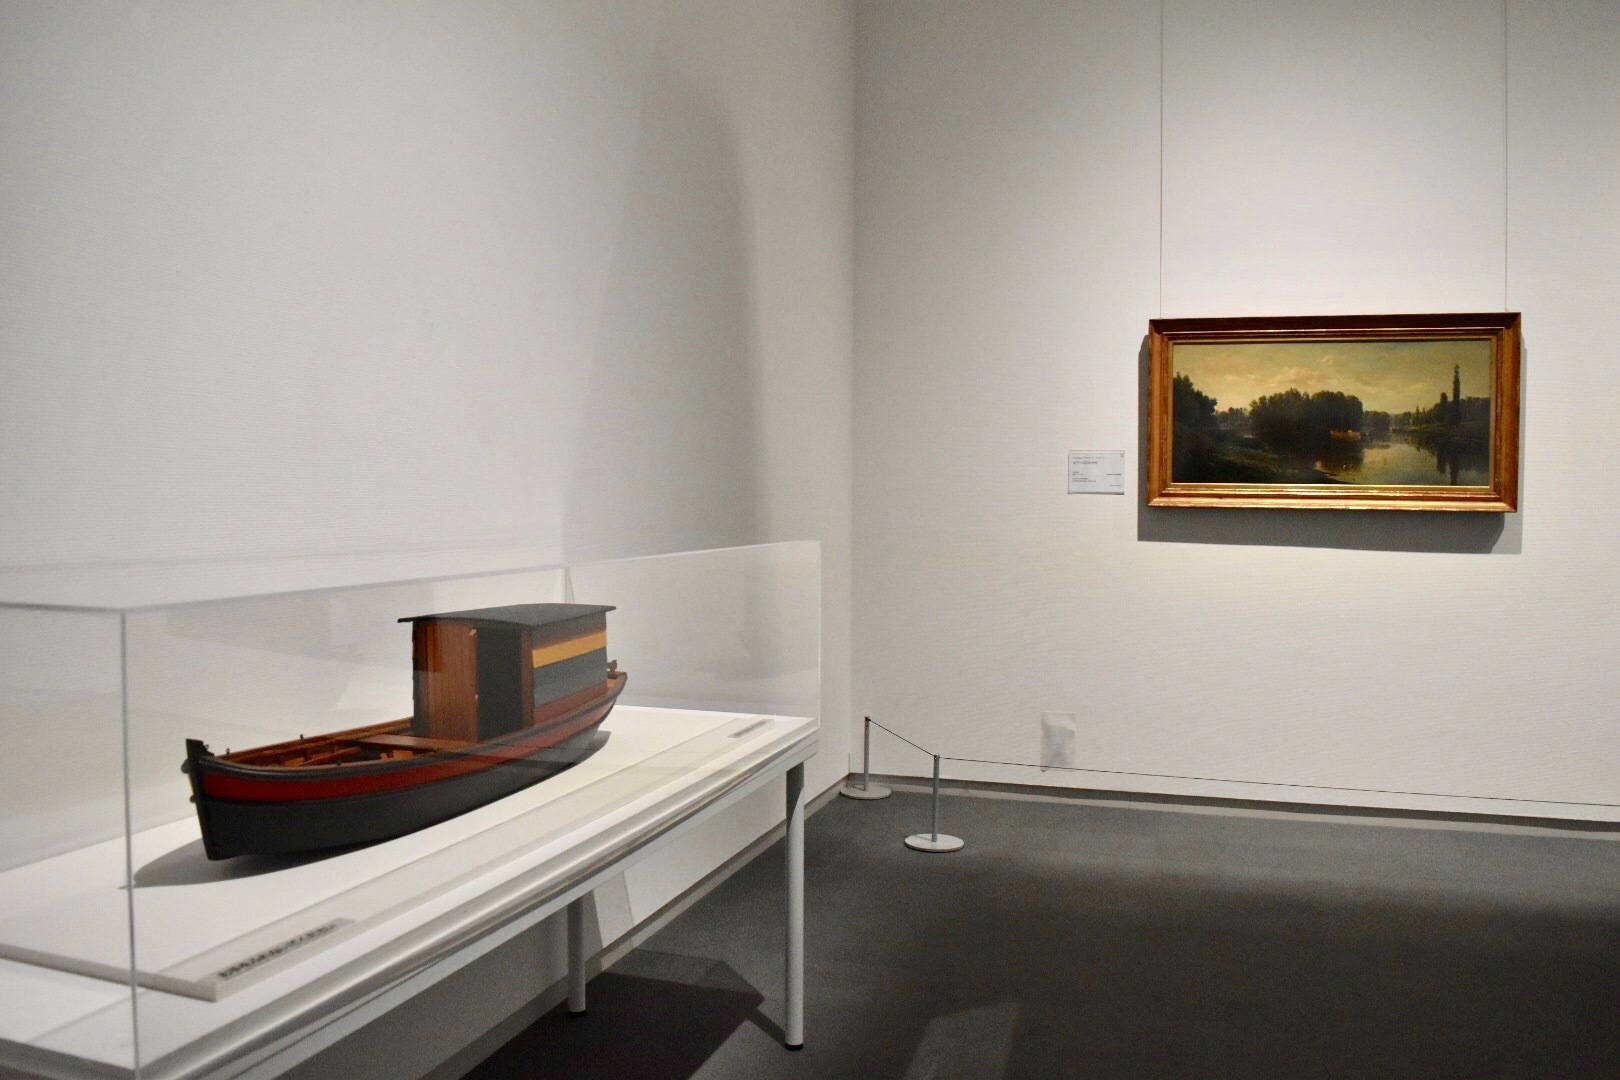 左手前：ダニエル・ラスカン（シャルル＝フランソワ・ドービニー末裔）　《ボタン号の模型》　2006-07年　個人蔵　右奥：シャルル＝フランソワ・ドービニー　《オワーズ川の中州》　1860年頃　公益財団法人村内美術館蔵